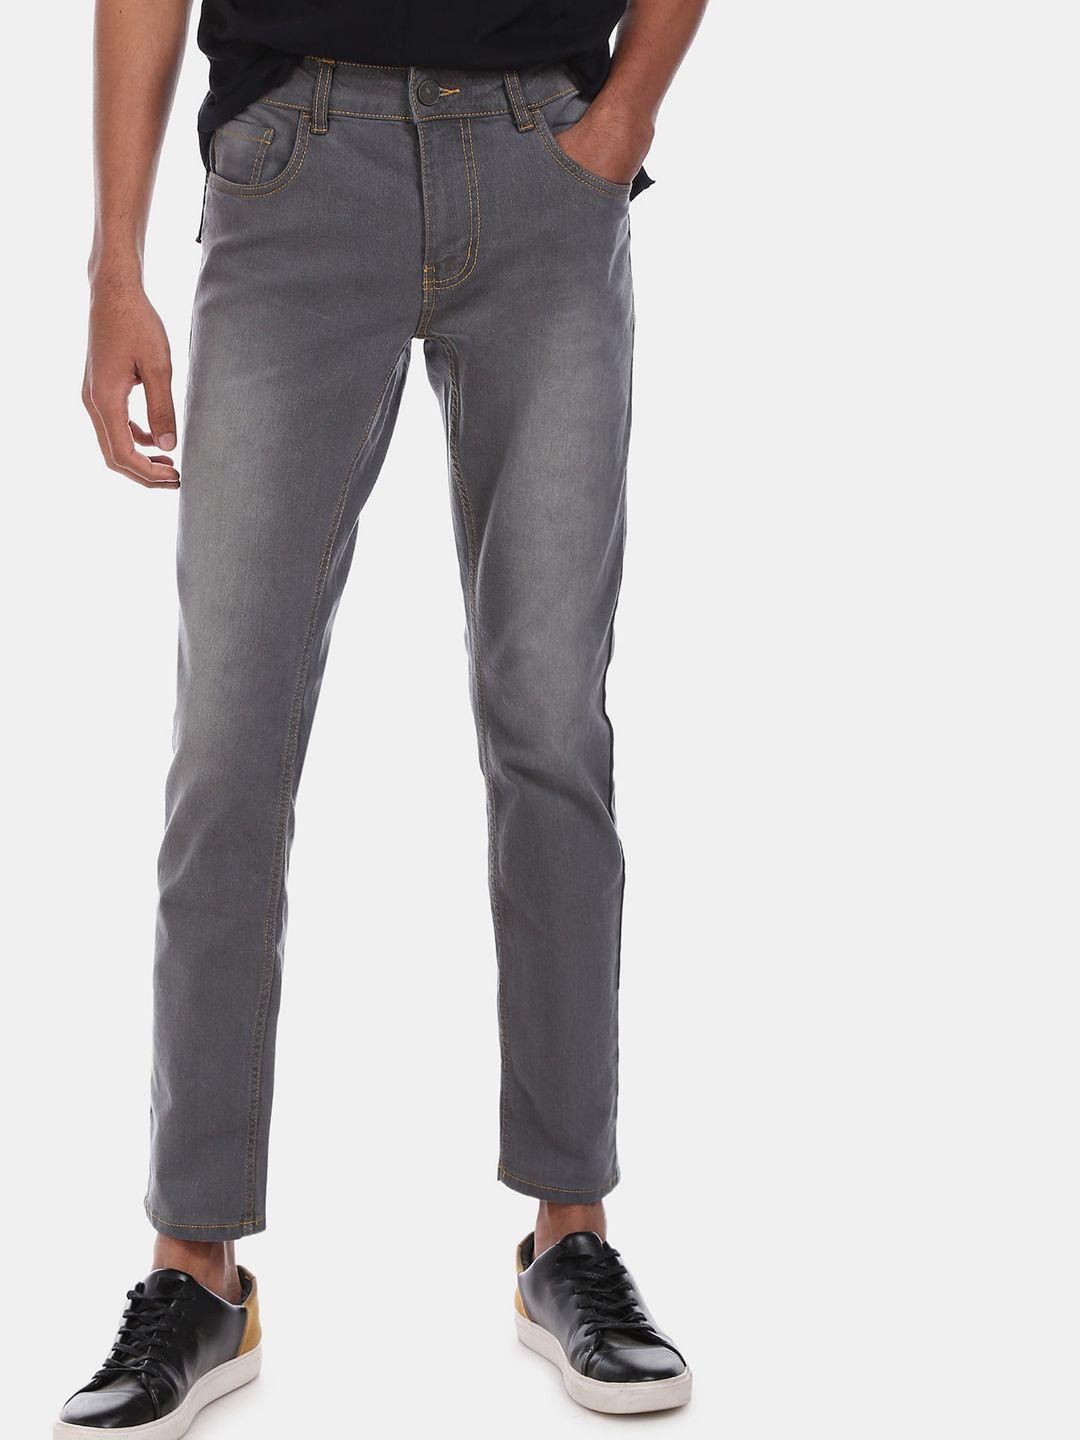 colt-men-grey-regular-fit-jeans